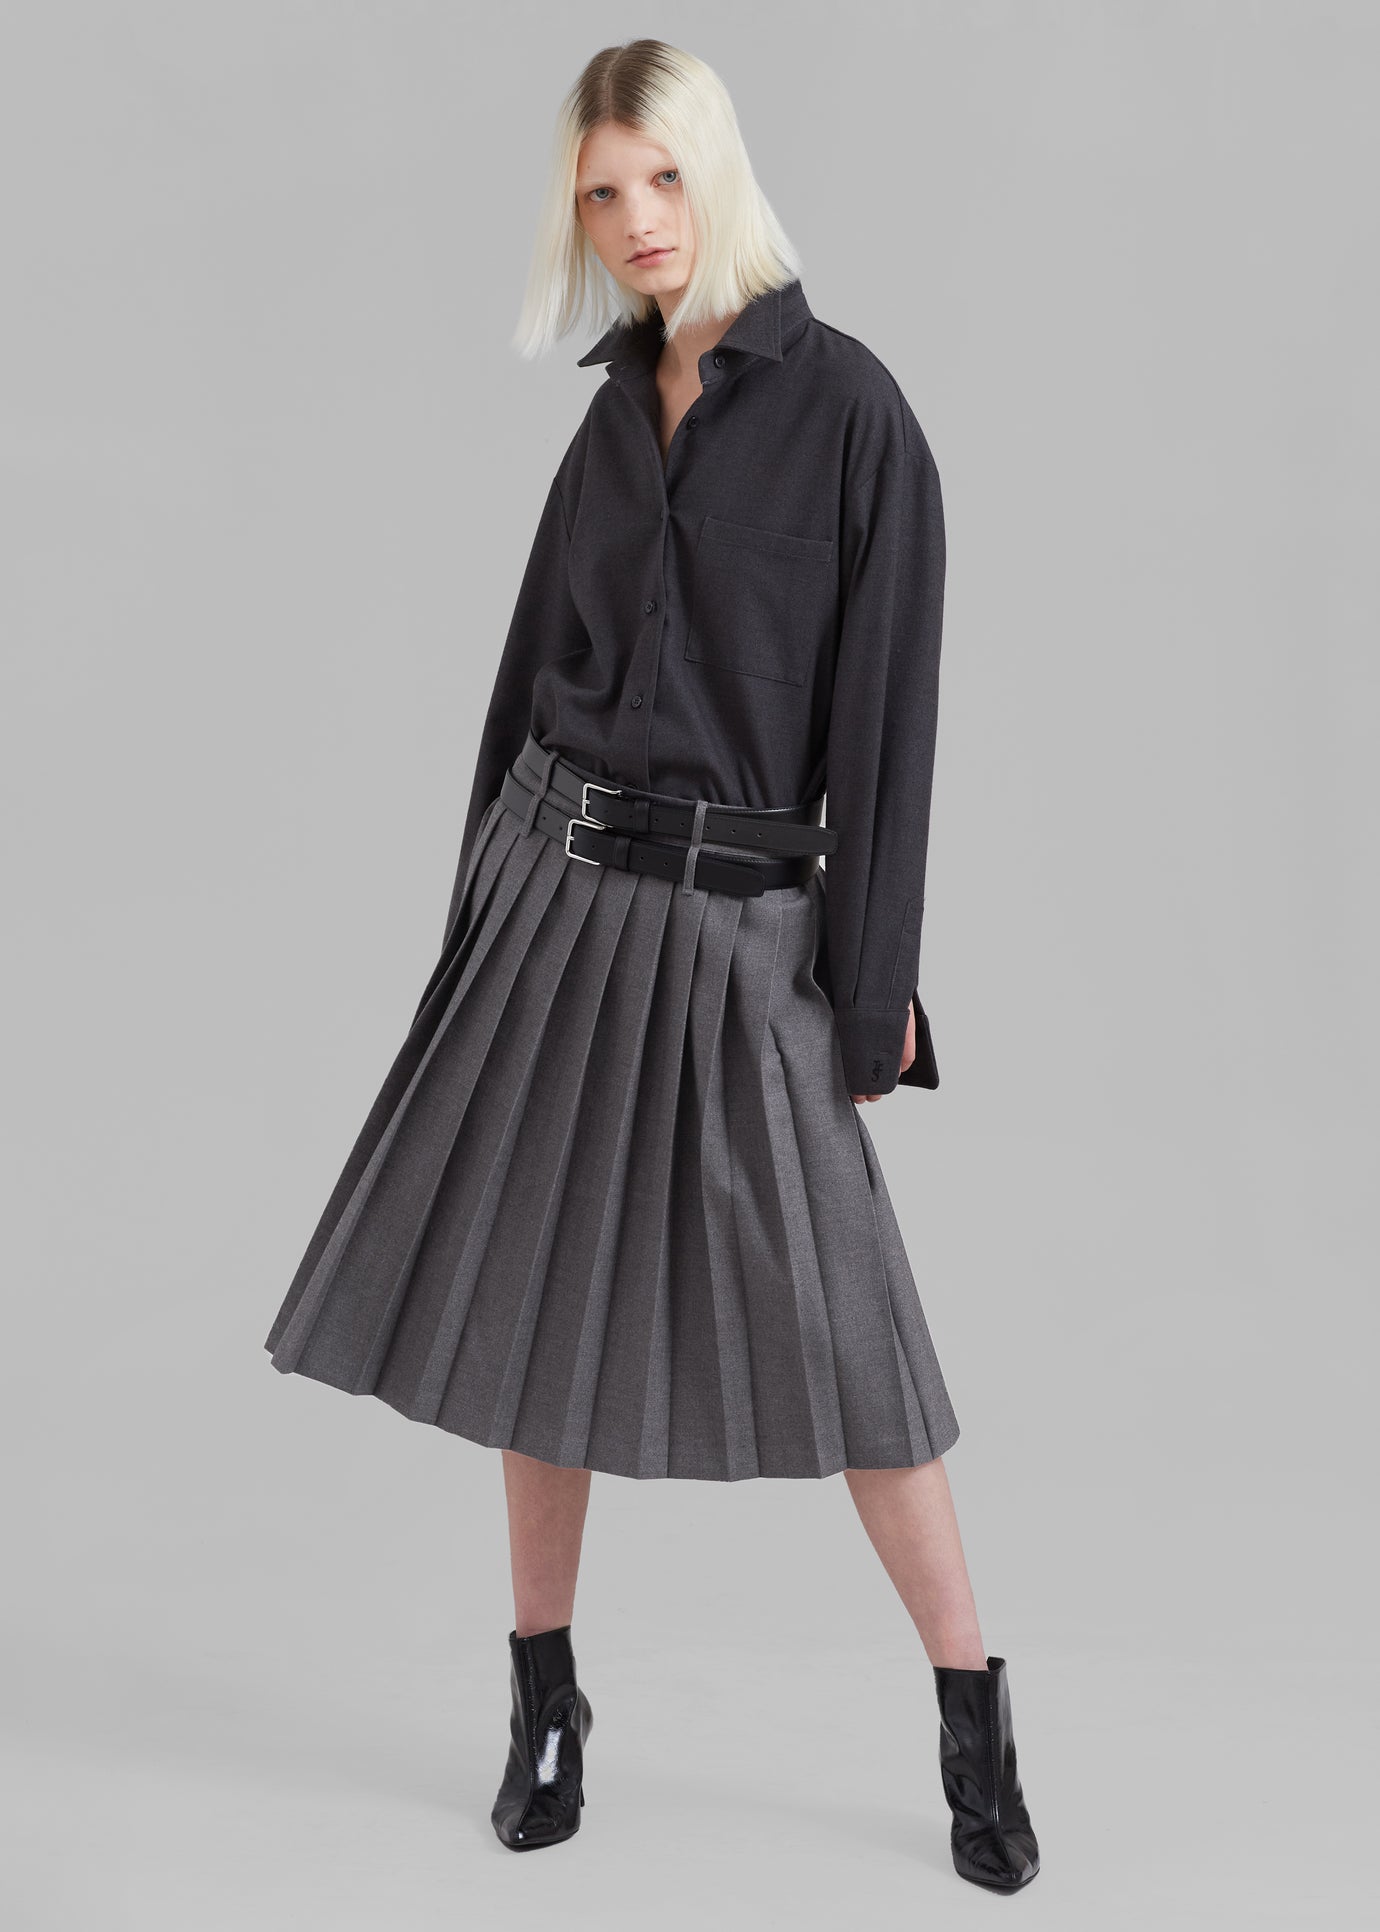 Giselle Mini Pleated Skirt, Grey